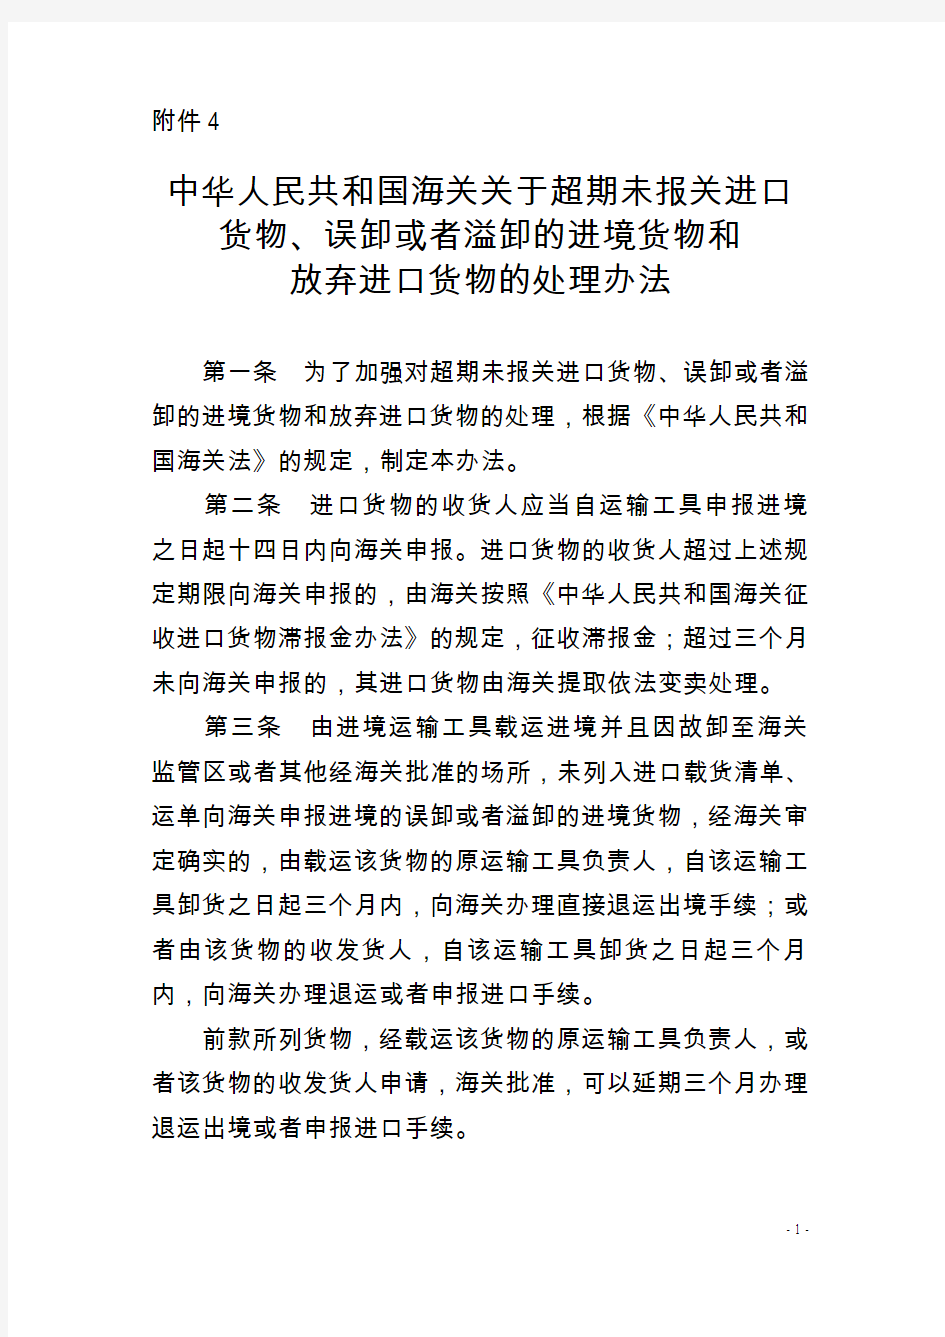 中华人民共和国海关关于超期未报关进口货物、误卸或者溢卸的进境货物和放弃进口货物的处理办法